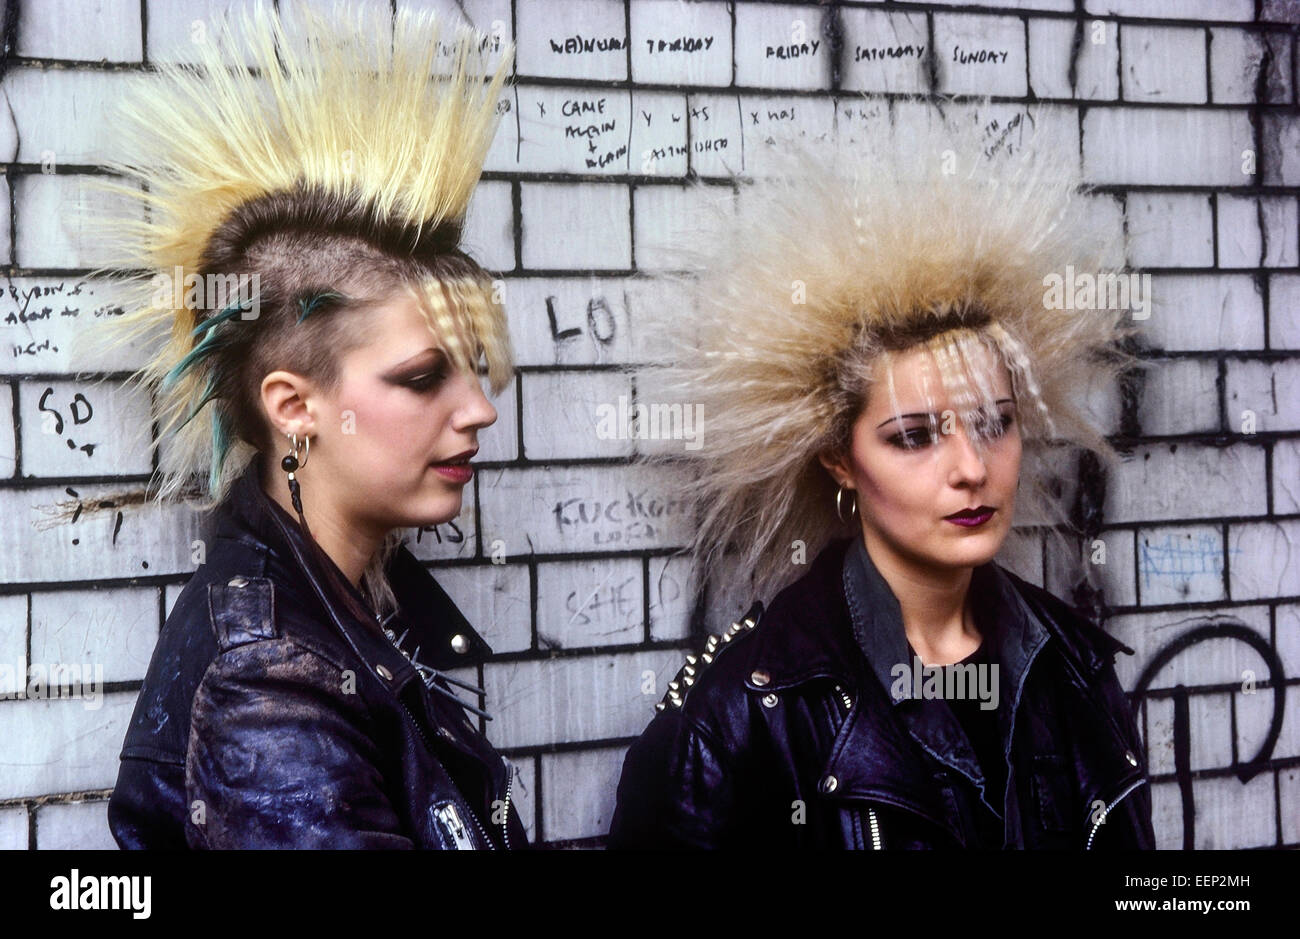 Ein paar weibliche Punks (Jackie & Renata). London. Ca. 80er Jahre Stockfoto